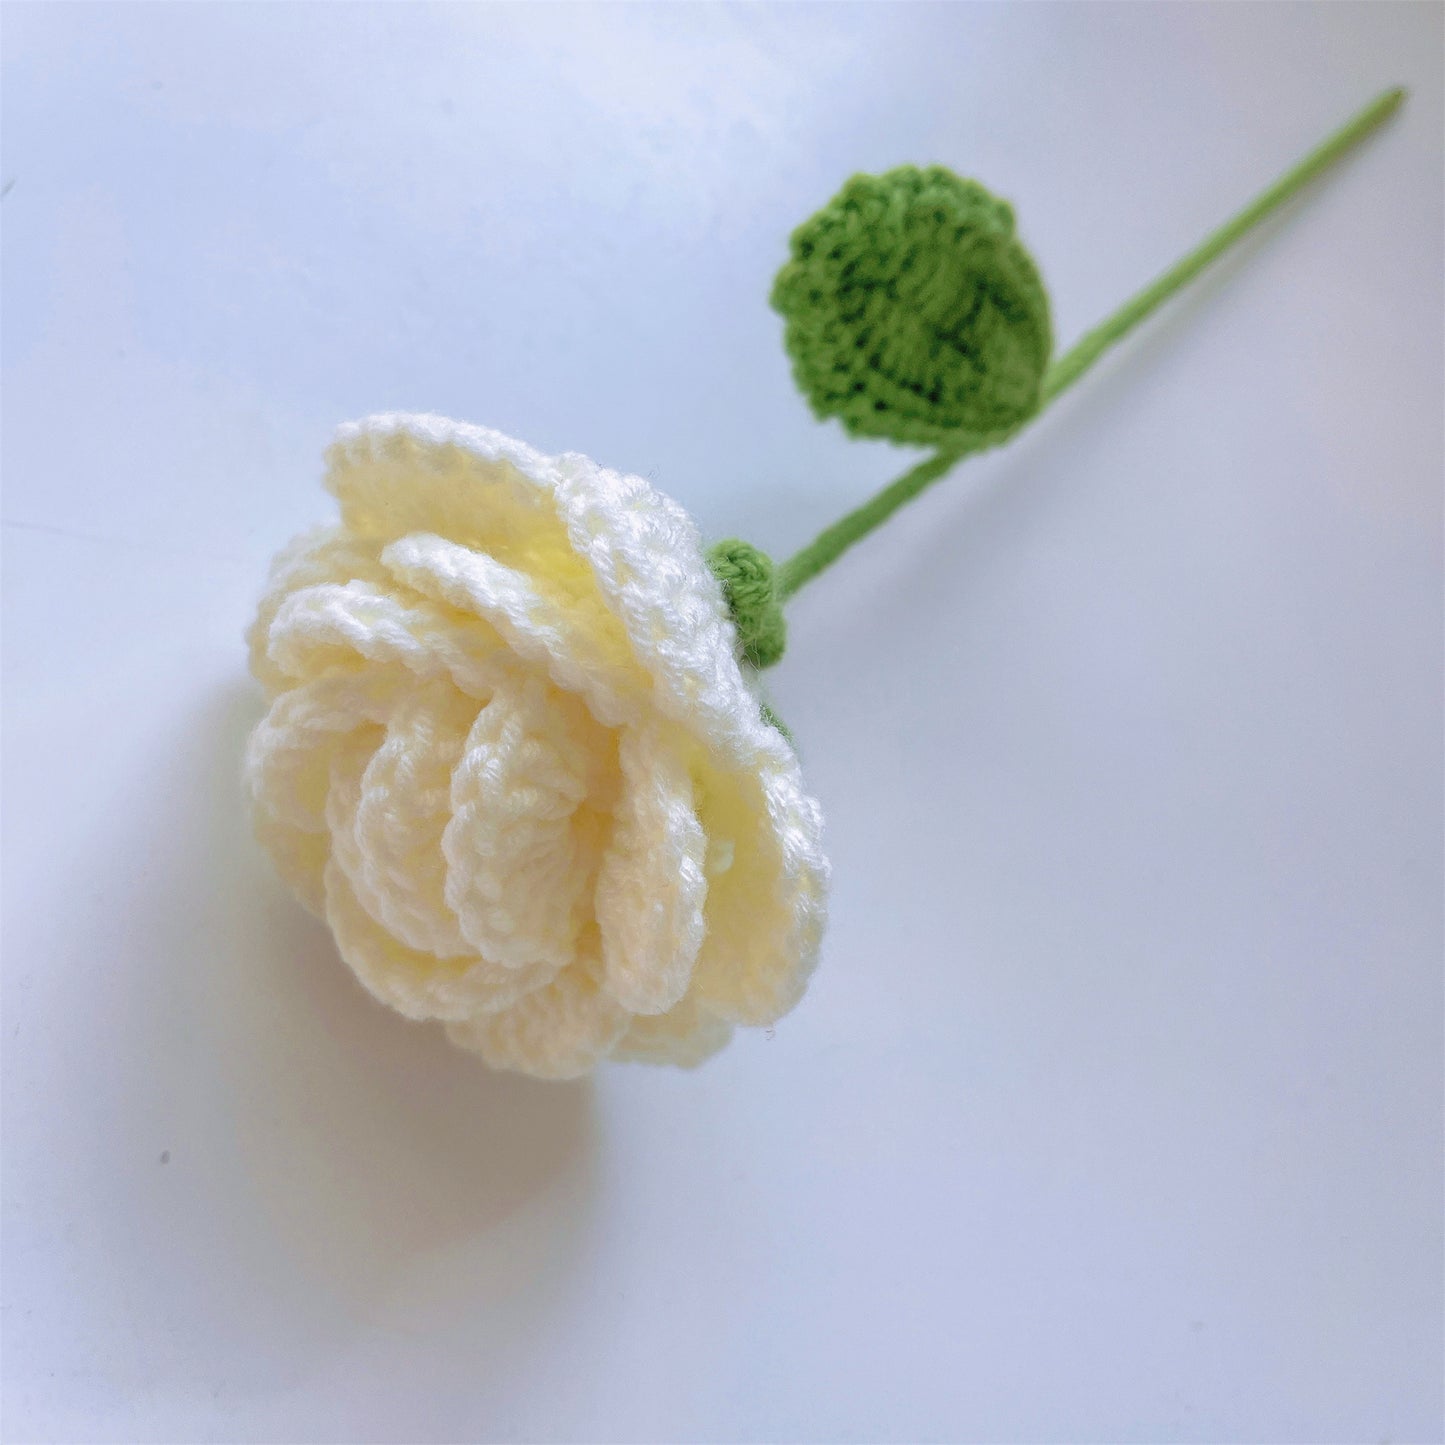 Eine Symphonie der Natur: Handgefertigter gehäkelter Blumenstrauß – Rosen, Tulpen, Gänseblümchen und Nelken